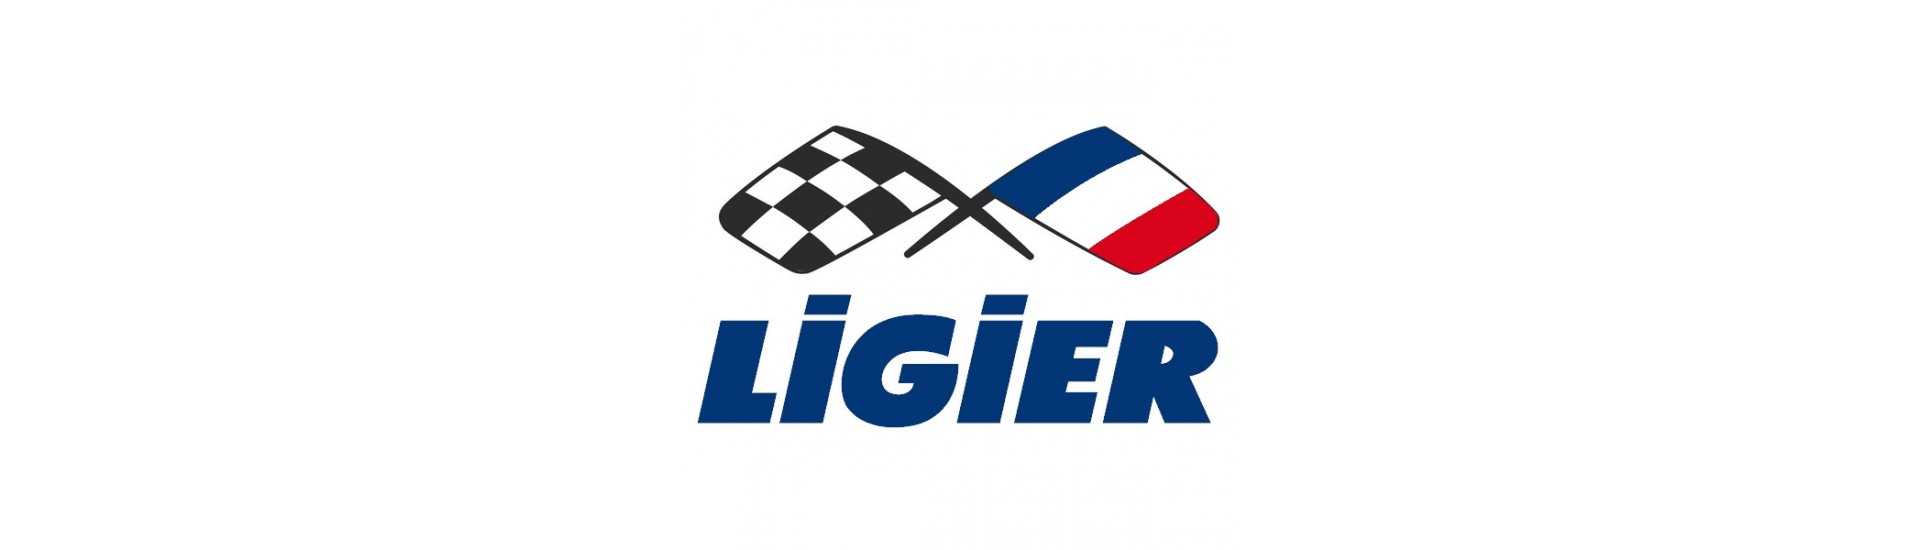 Bremsplatte zum besten Preis für Auto ohne Lizenz Ligier